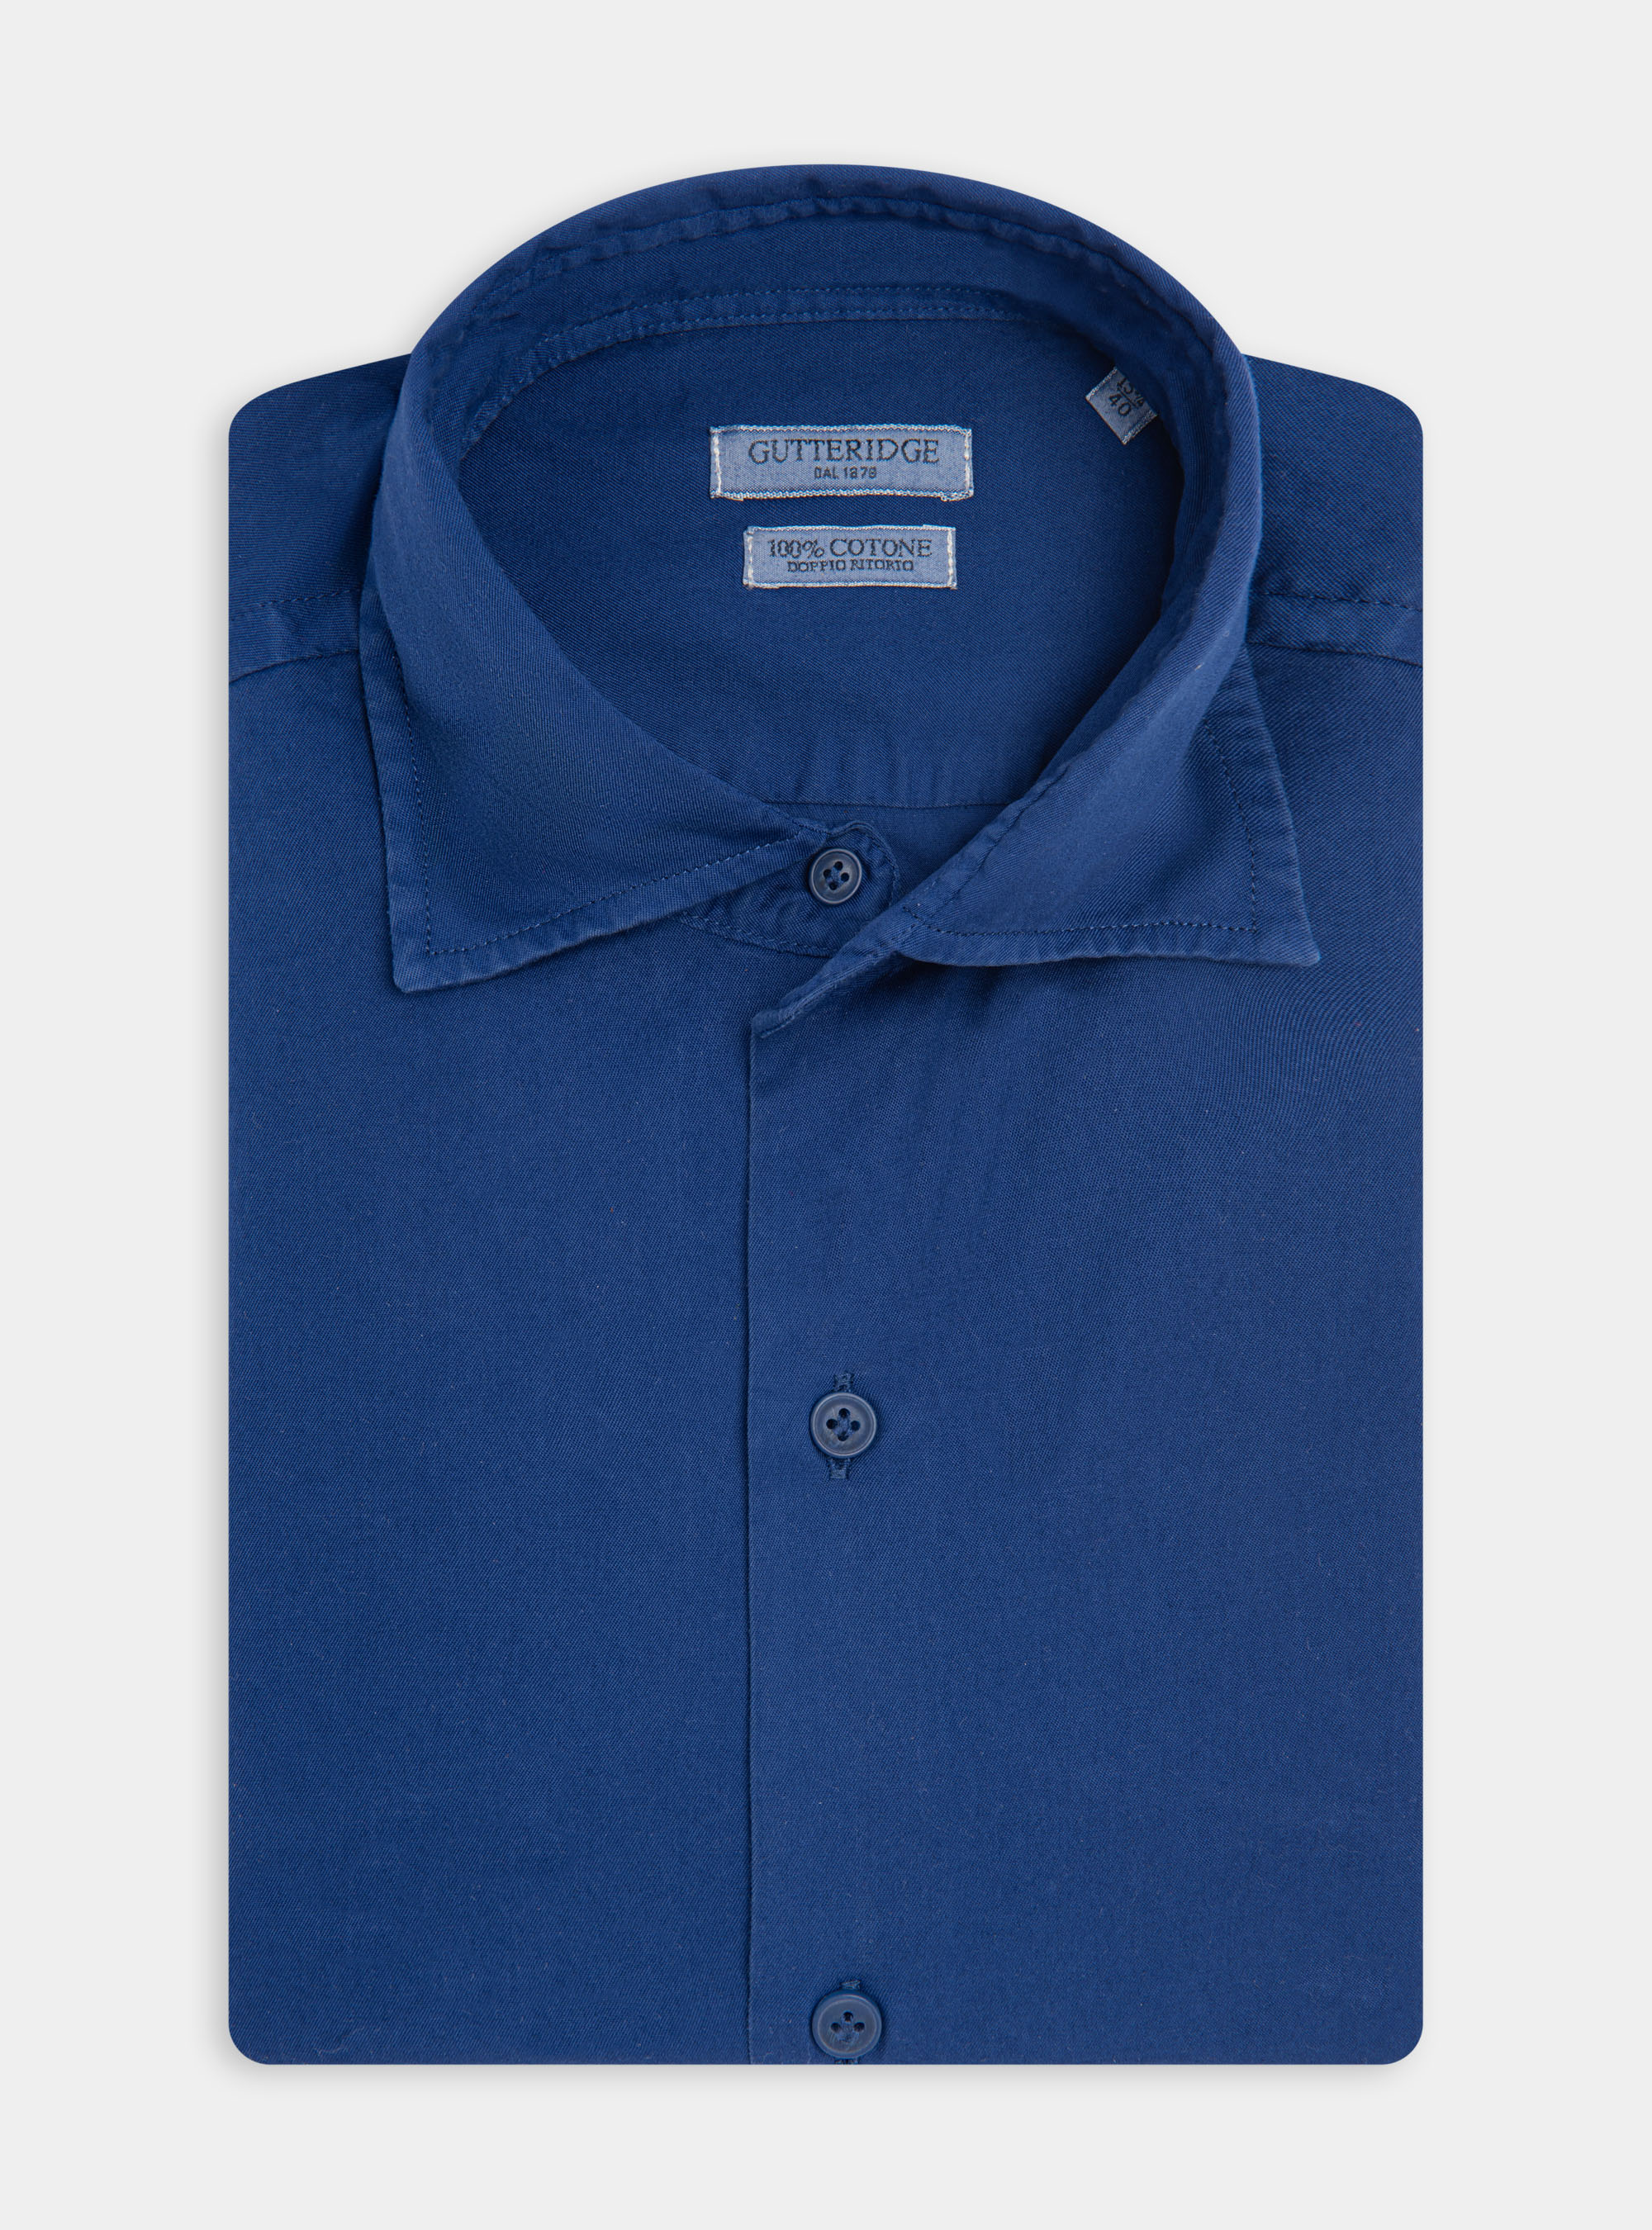 Garment dyed cotton semi-collared shirt | GutteridgeEU | catalog ...